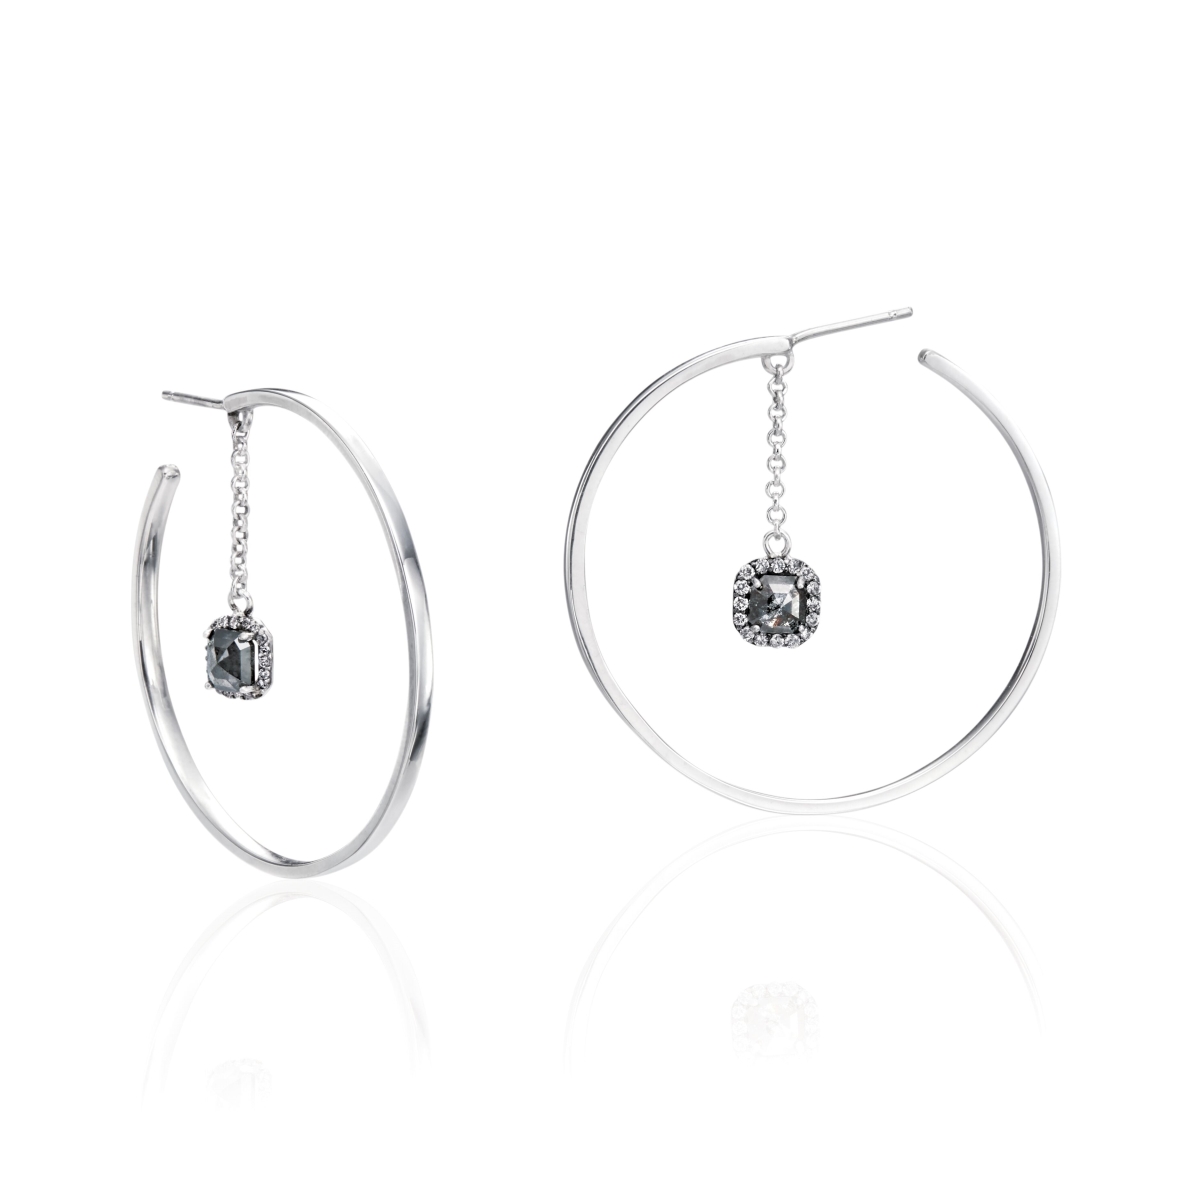 Lde6 1.20 Ct Diamonds Evening Ice Earrings In Sterling Silver